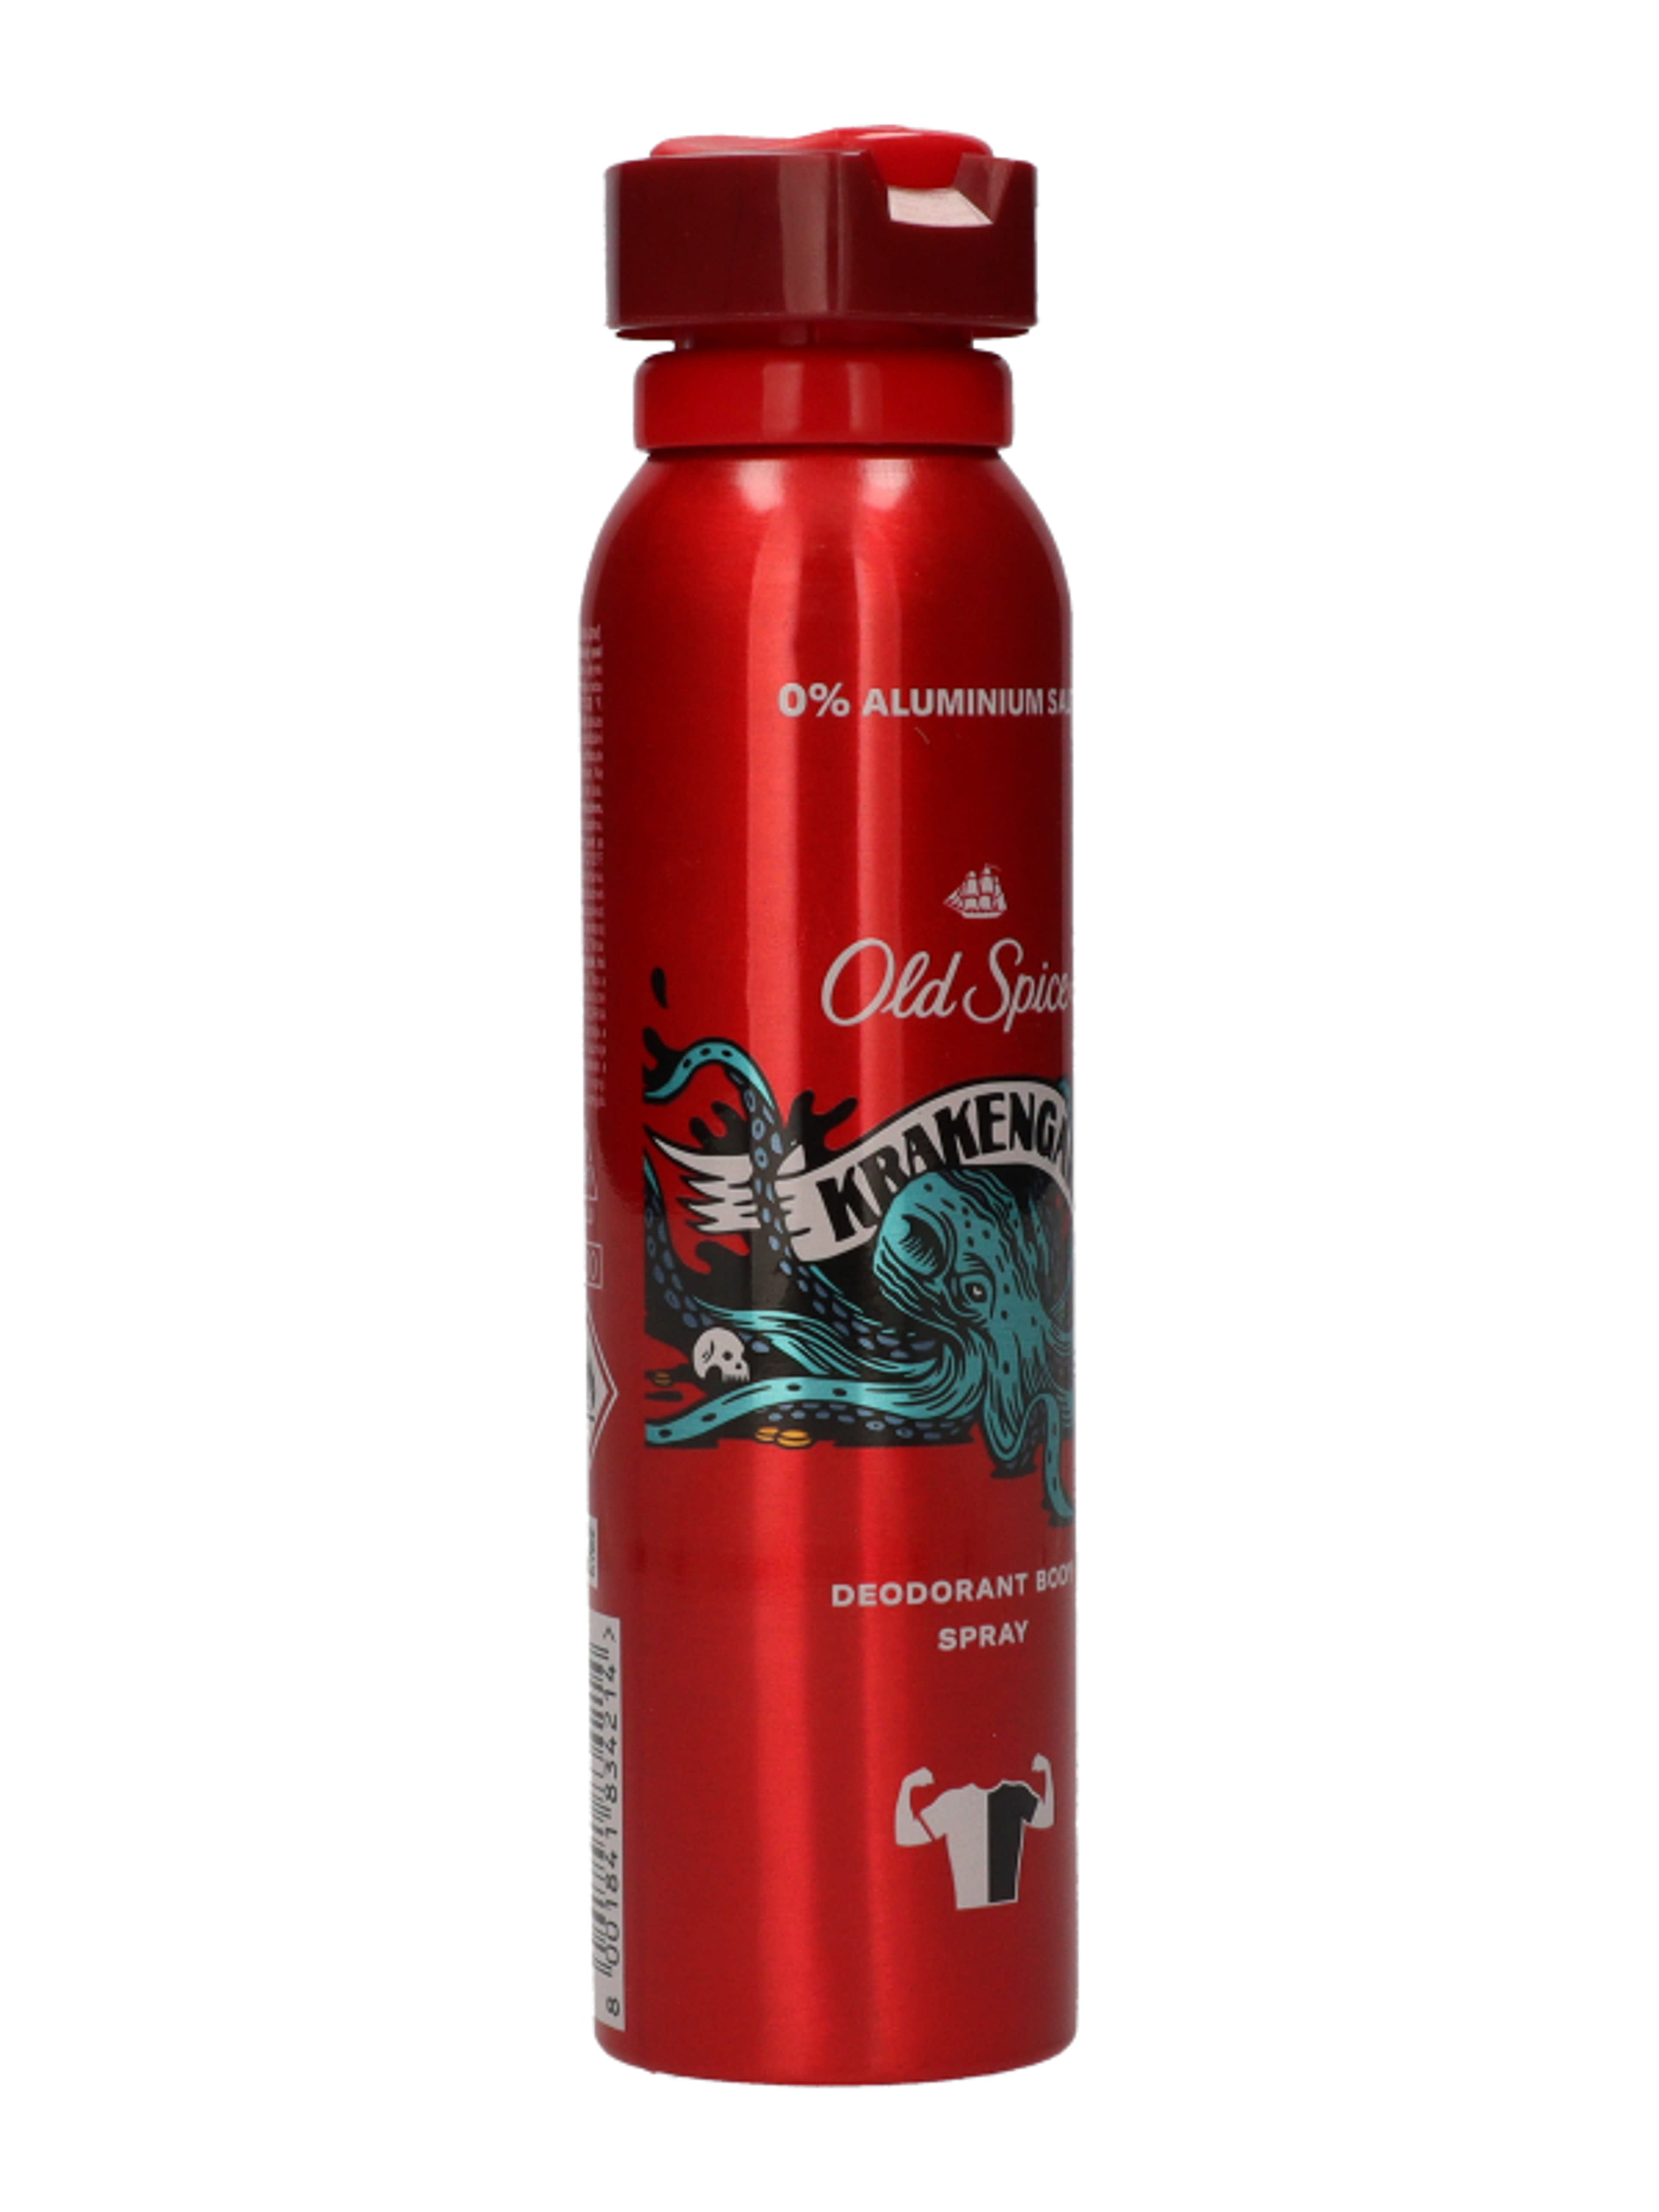 Old Spice deodorant spray krakengard férfi - 150 ml-7